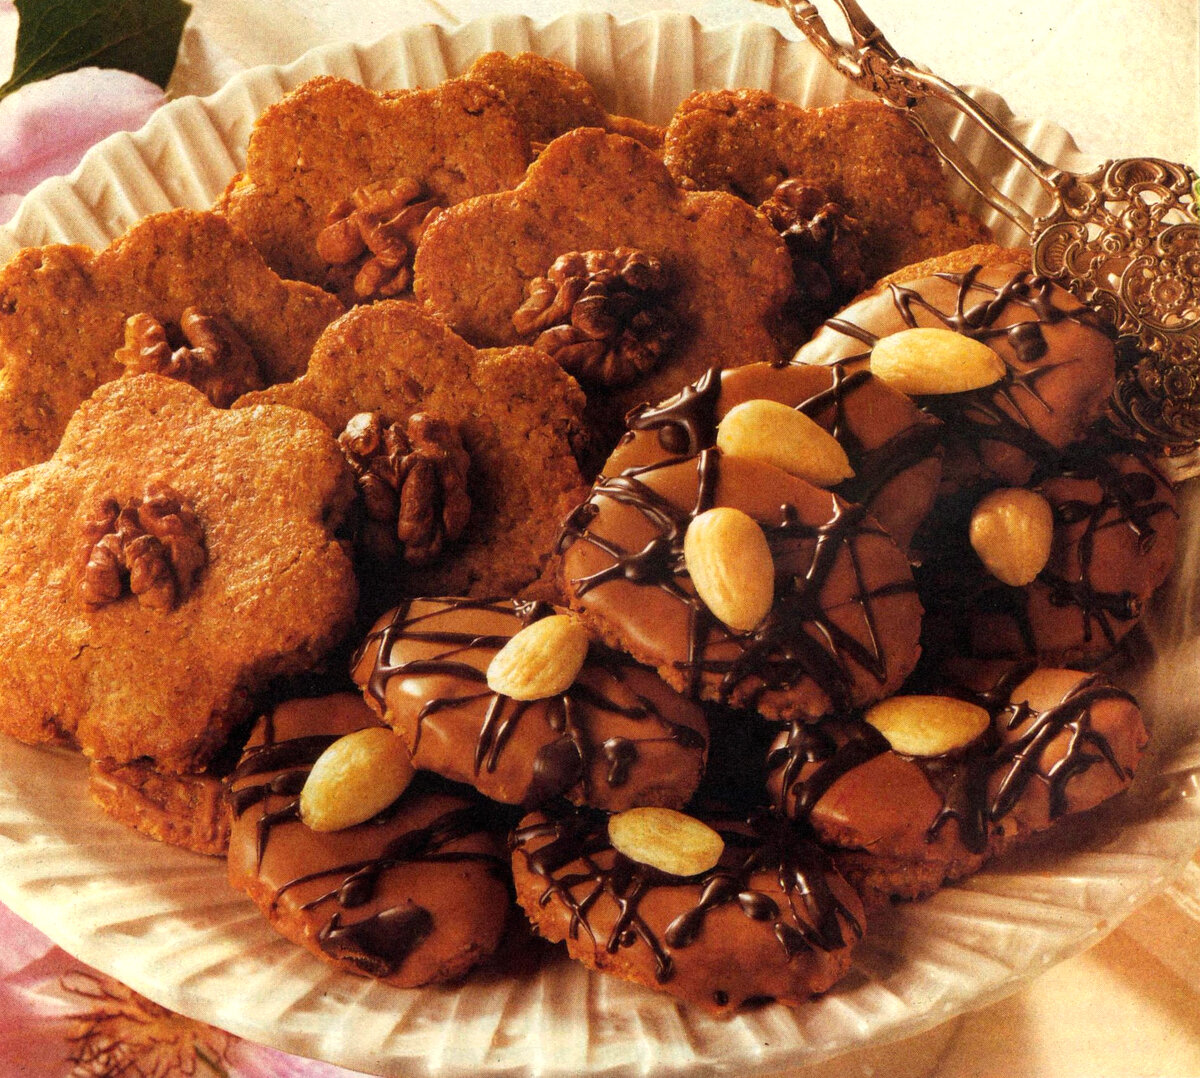 Печенье с грецкими орехами